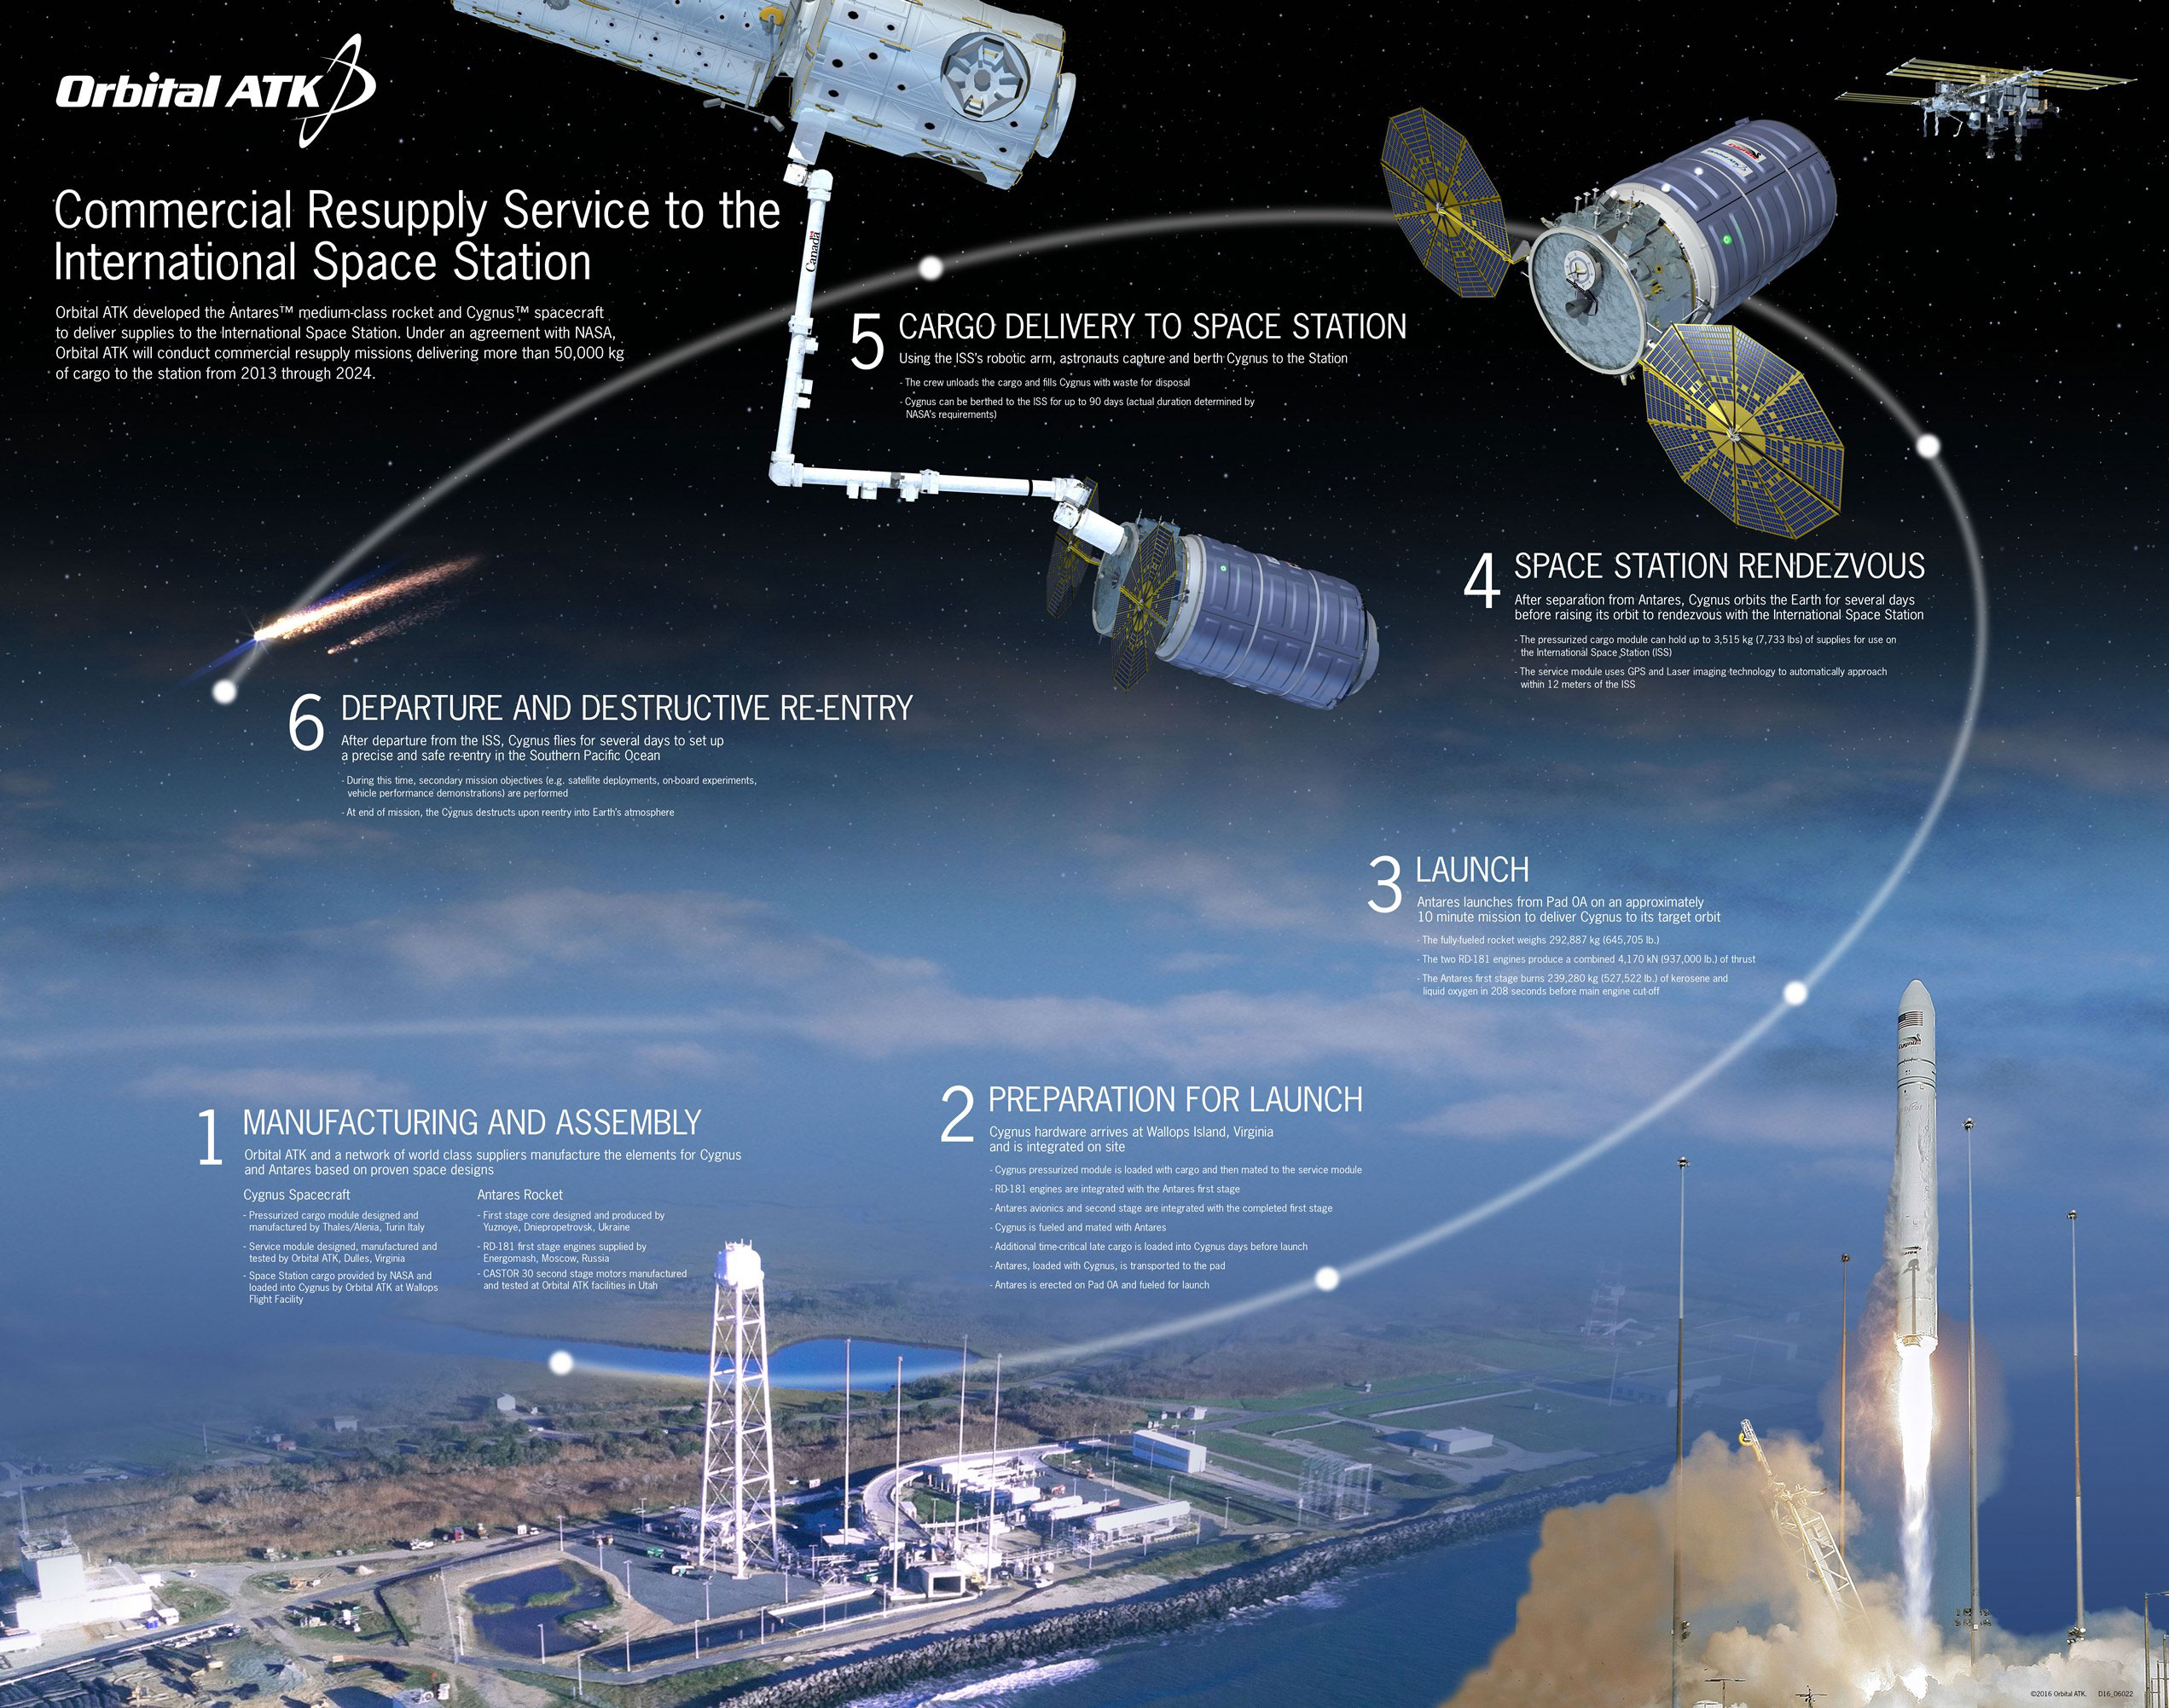 Cygnus Mission Profile - Credit: Orbital ATK